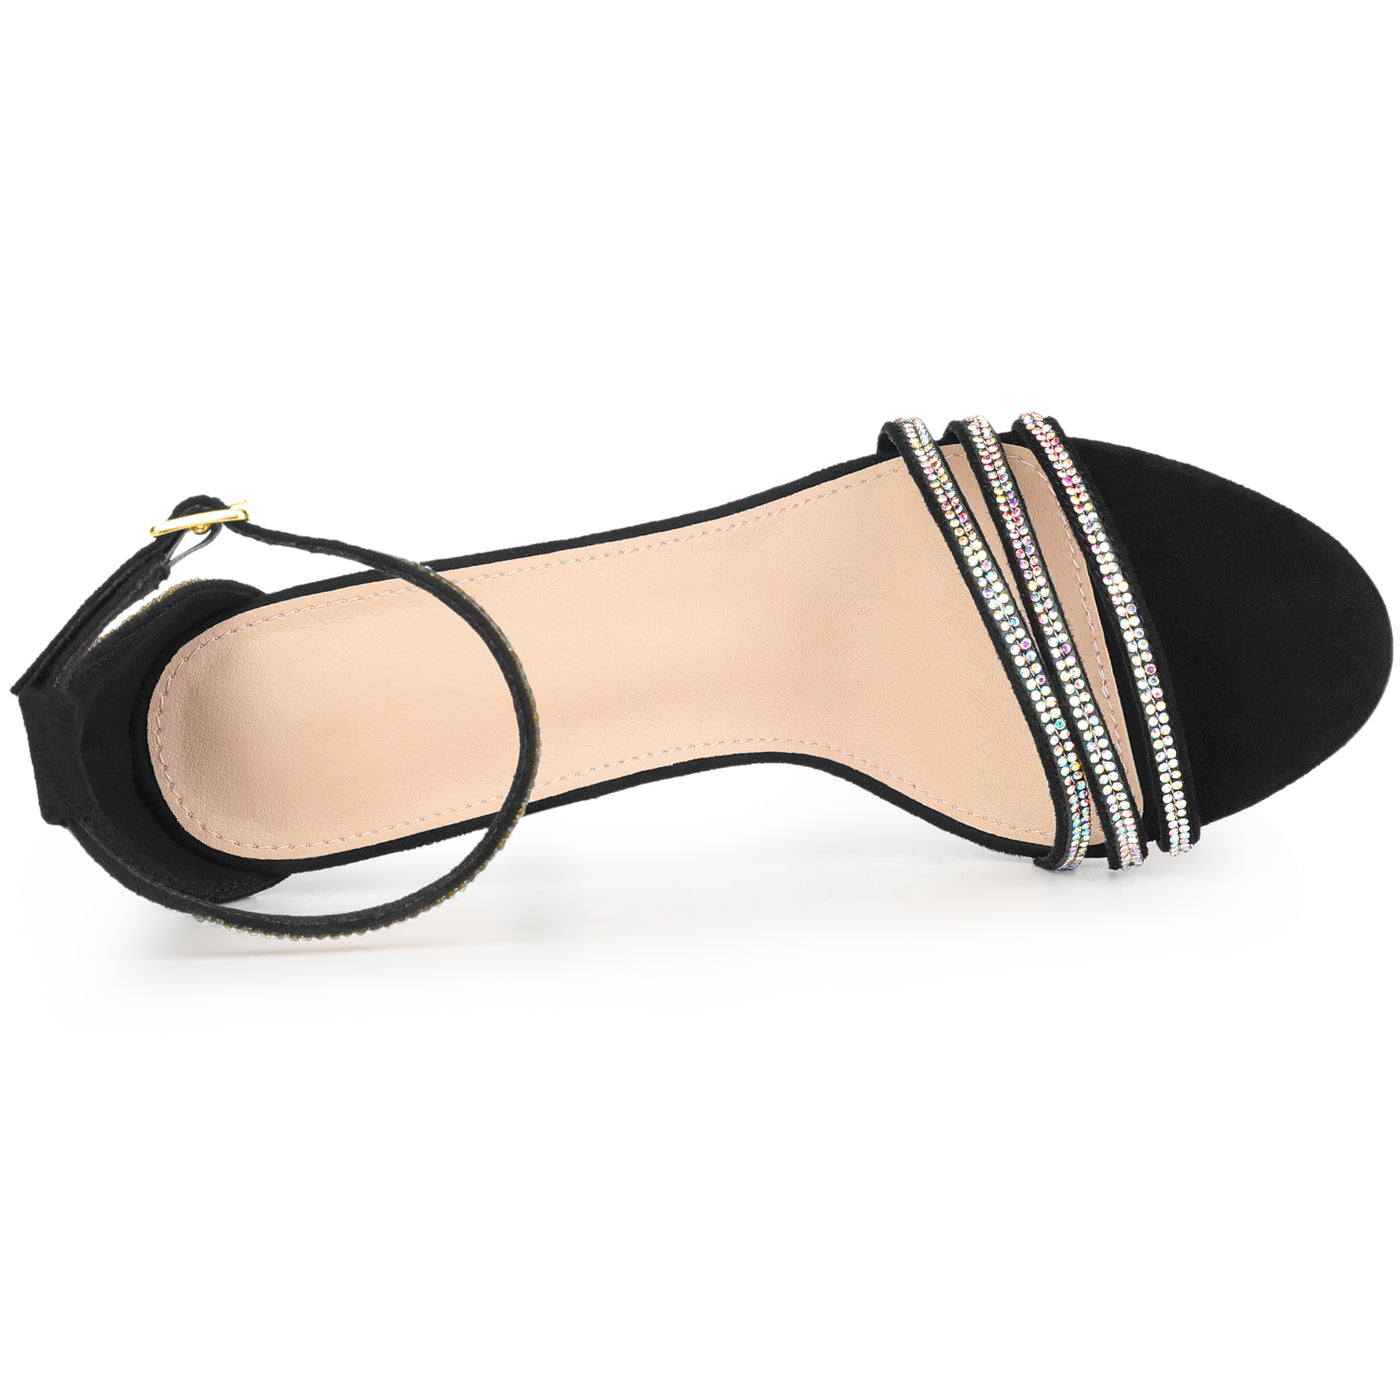 Allegra K Women's Round Toe Rhinestone Ankle Strap Stiletto Heels Sandals